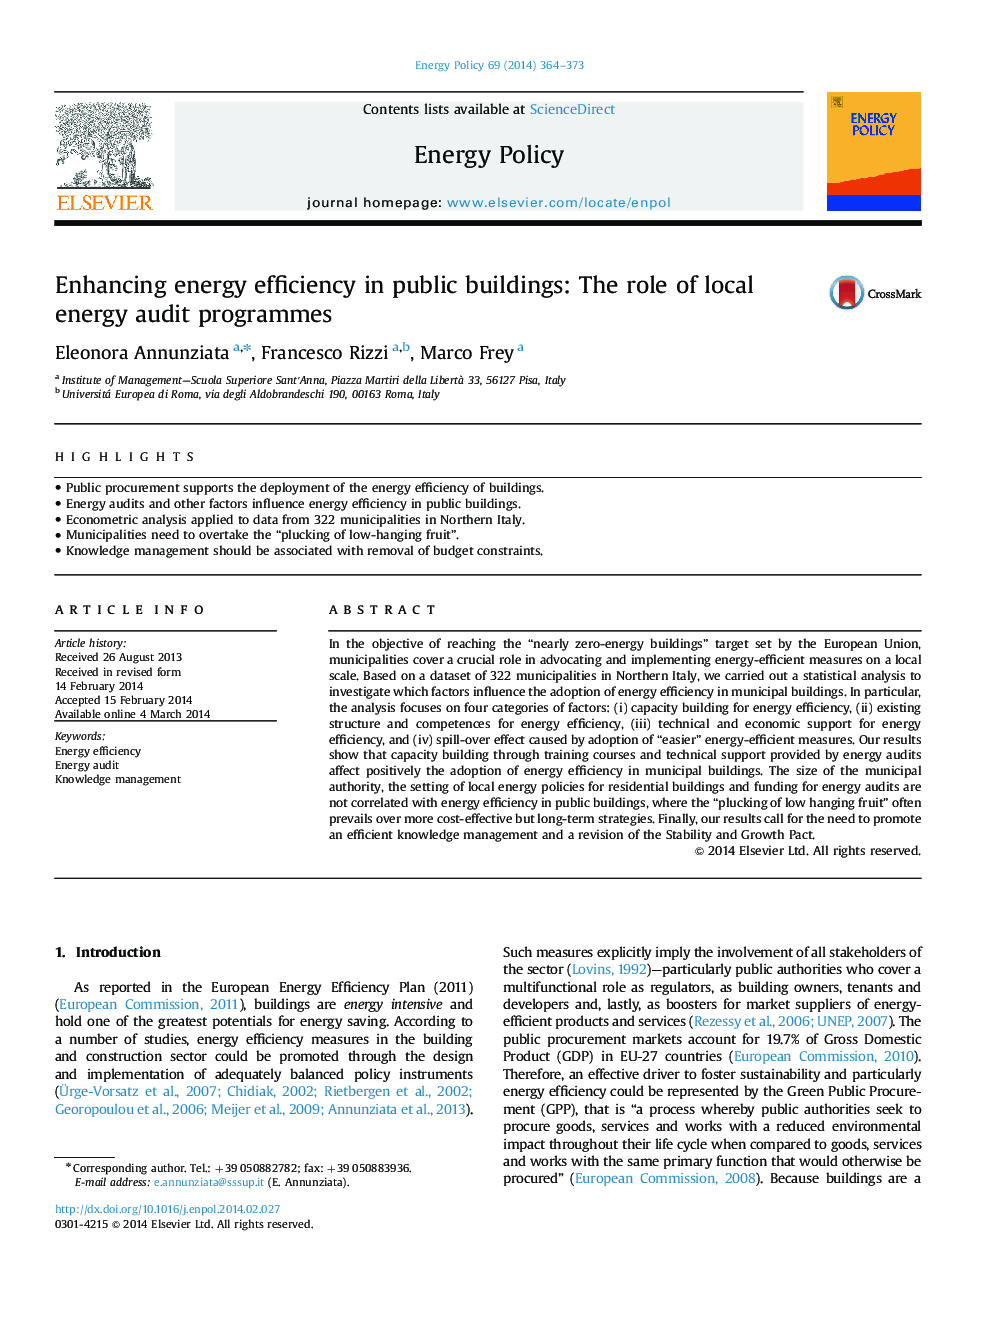 افزایش بهره وری انرژی در ساختمان های عمومی: نقش برنامه های ممیزی انرژی محلی 